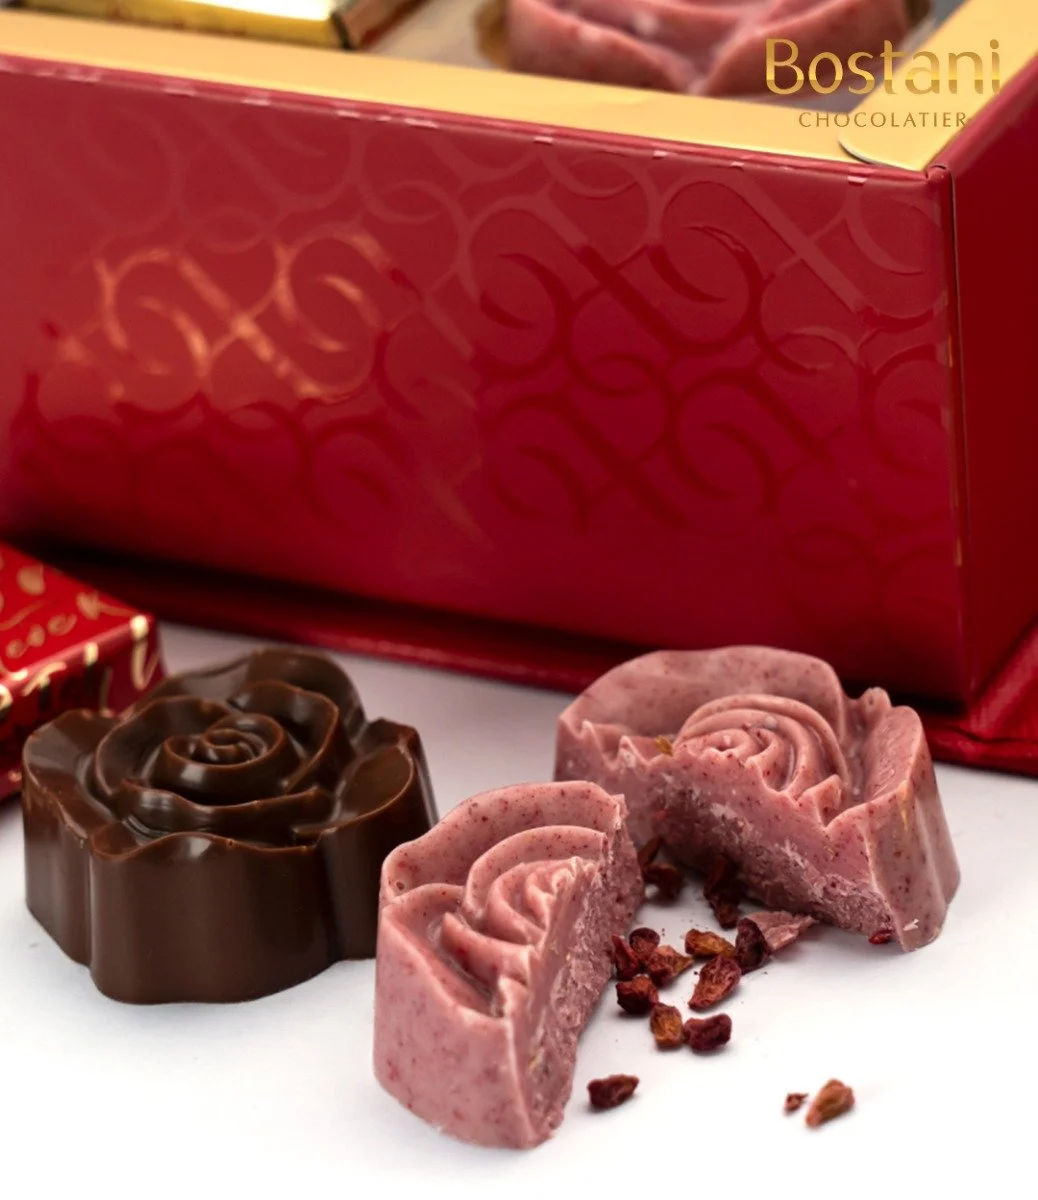 Heart Chocolate Box by Bostani - 12 Pcs